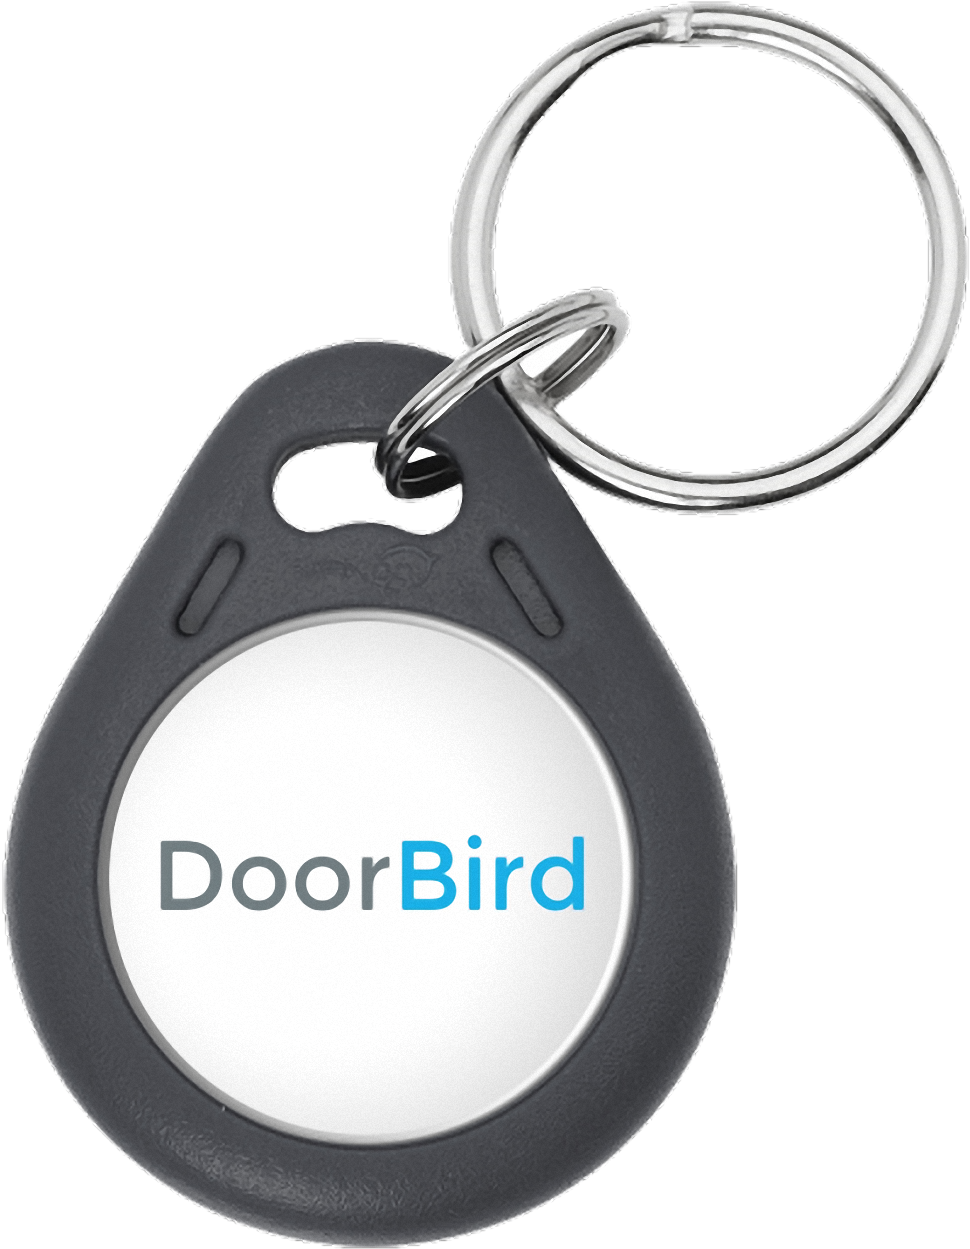 Daniel - Doorbird Rf - Doorbird Key Fob (1264x1264), Png Download